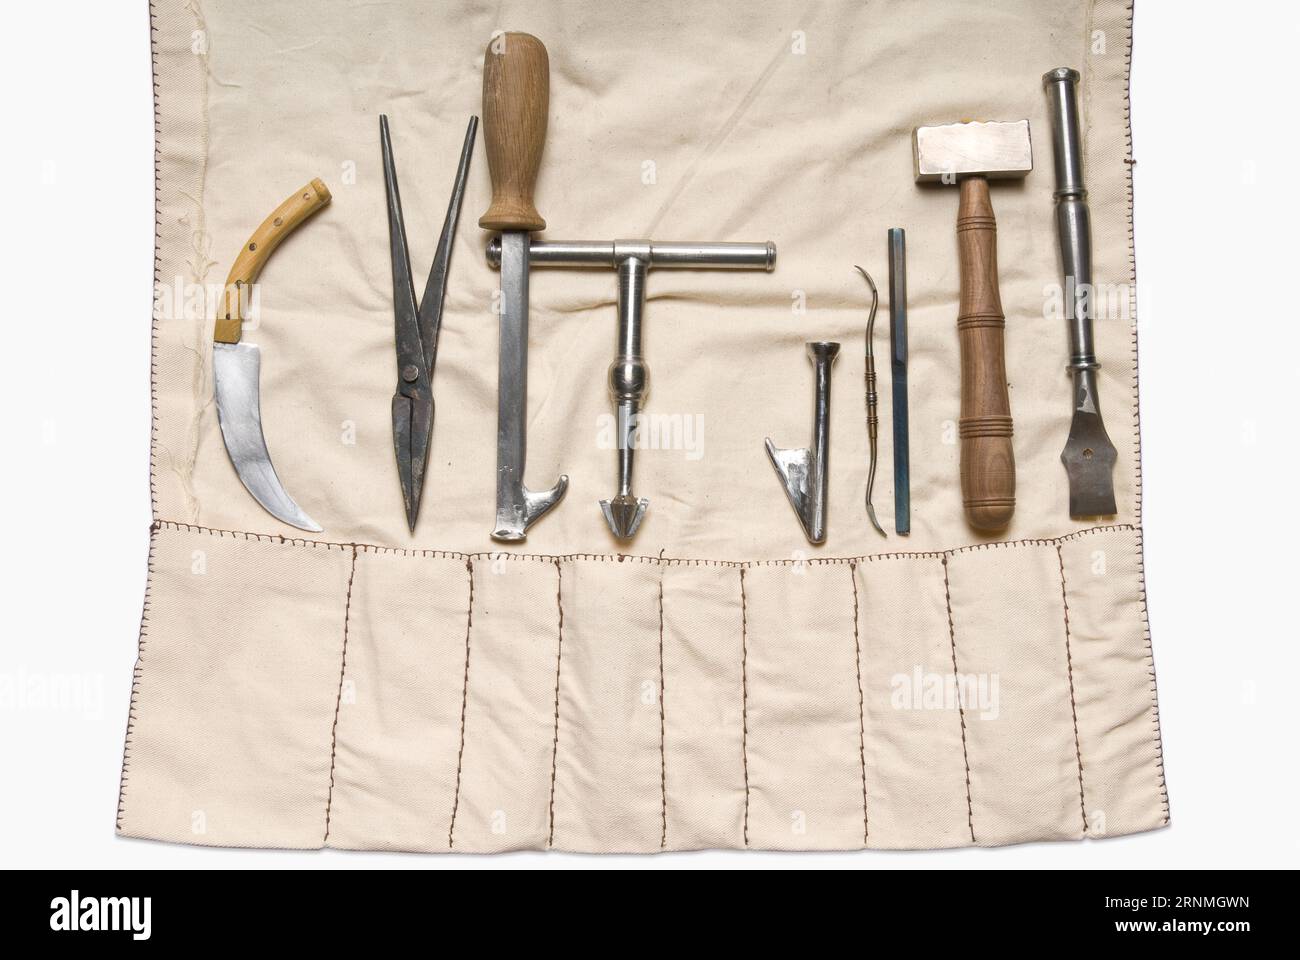 Trepinierende und orthopädisch-mittelalterliche medizinische Instrumente Stockfoto